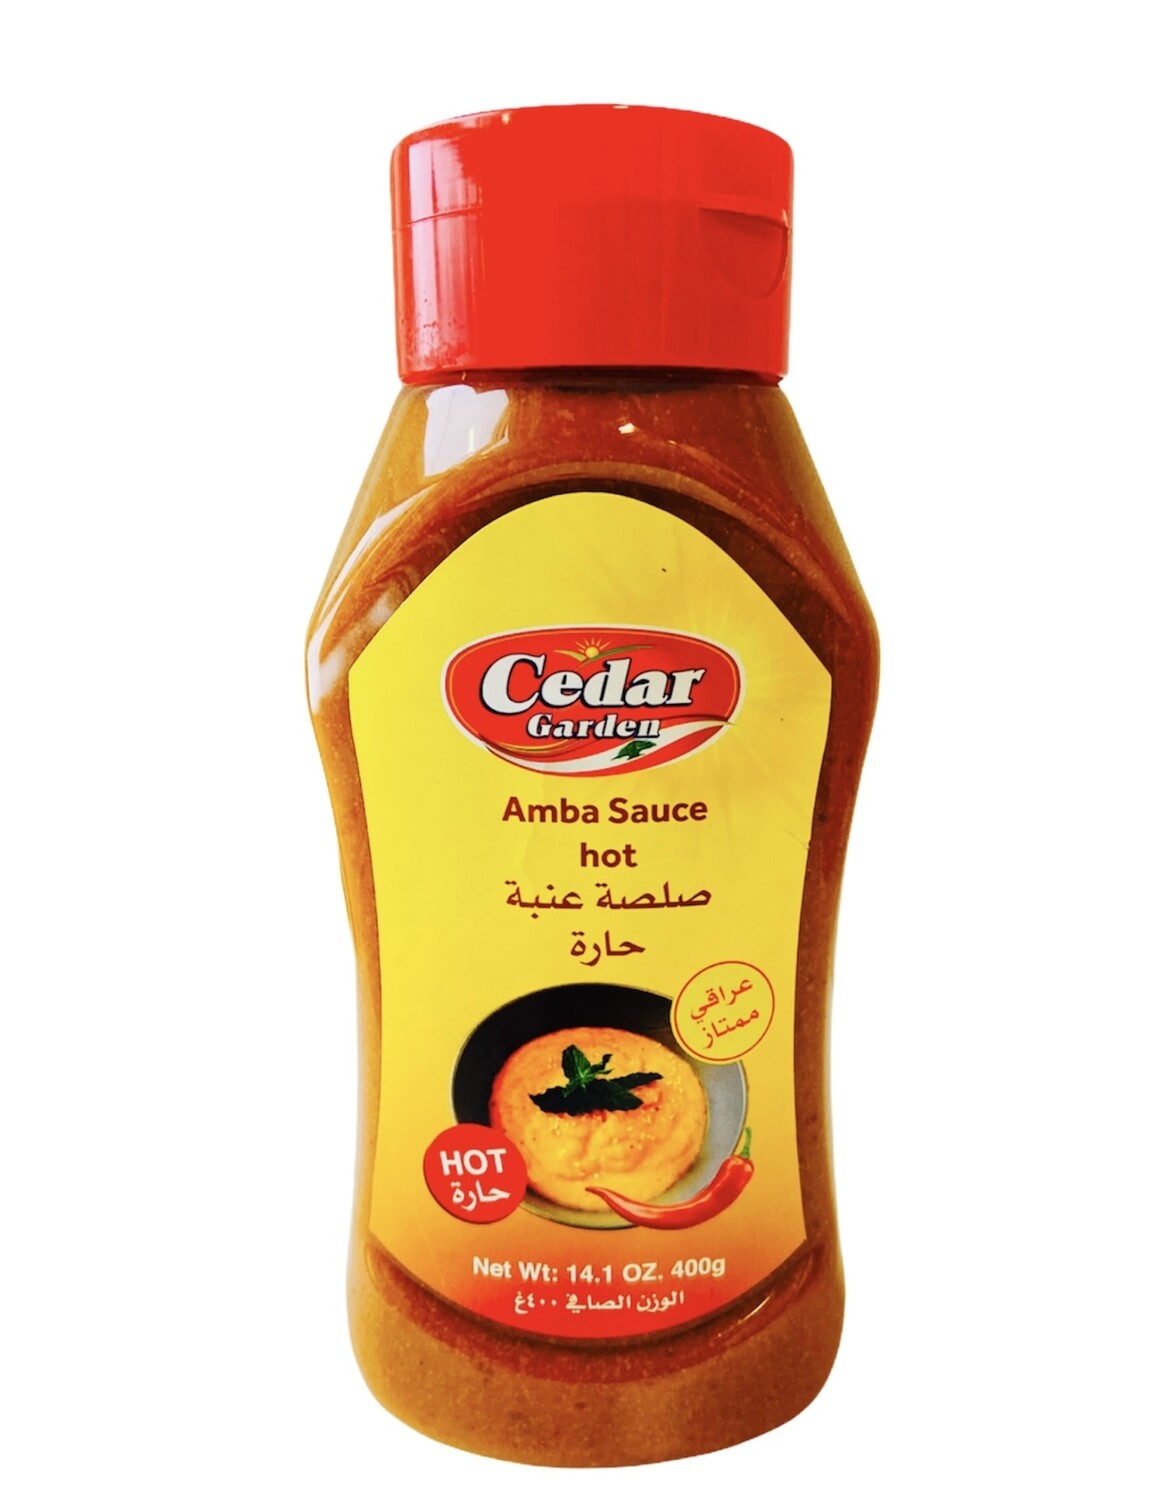 Cedar Garden Spicy Anba Sauce